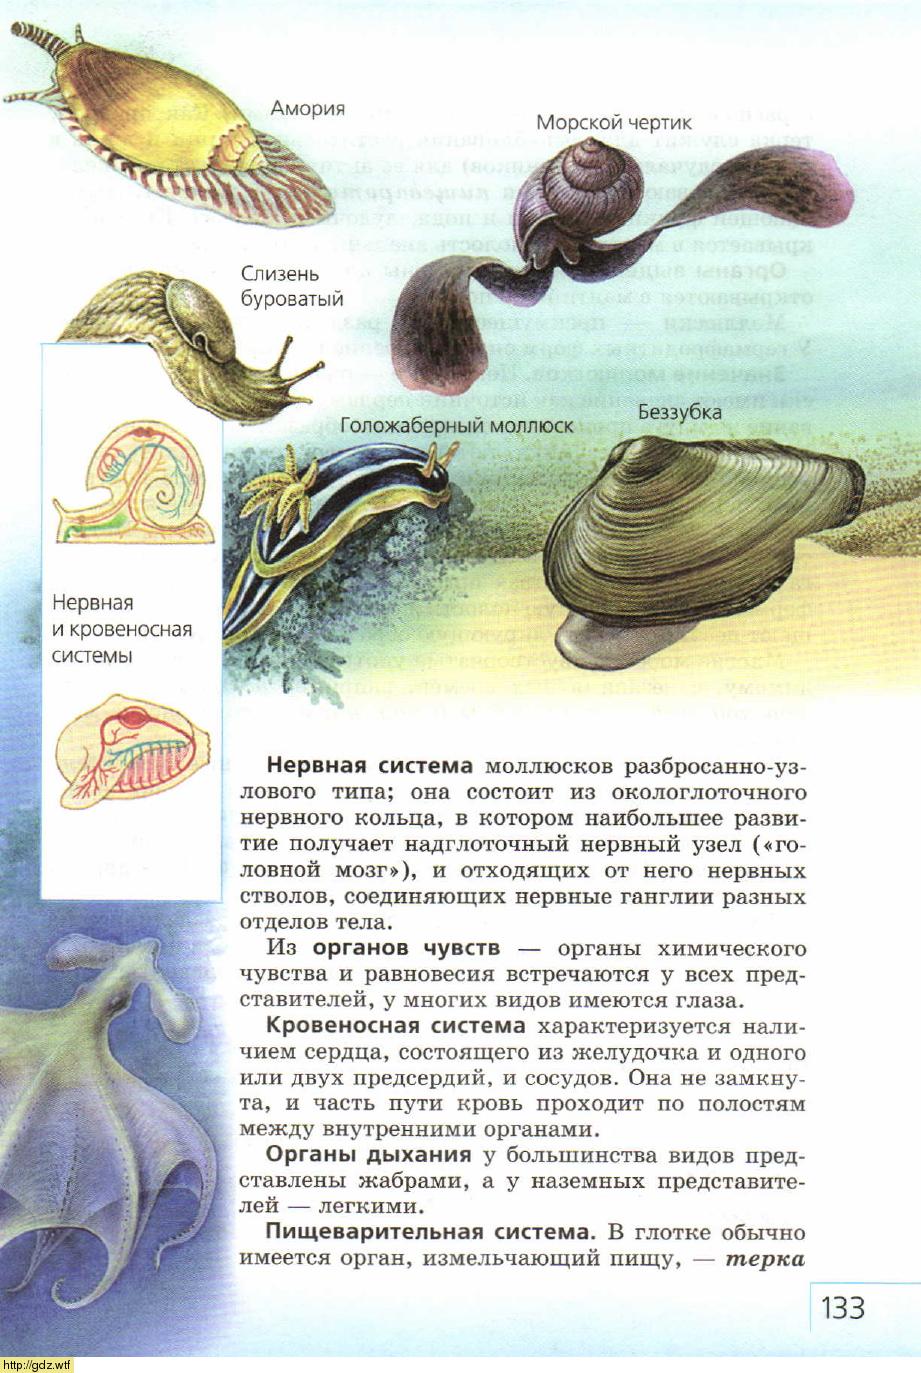 Органы химического чувства у моллюсков